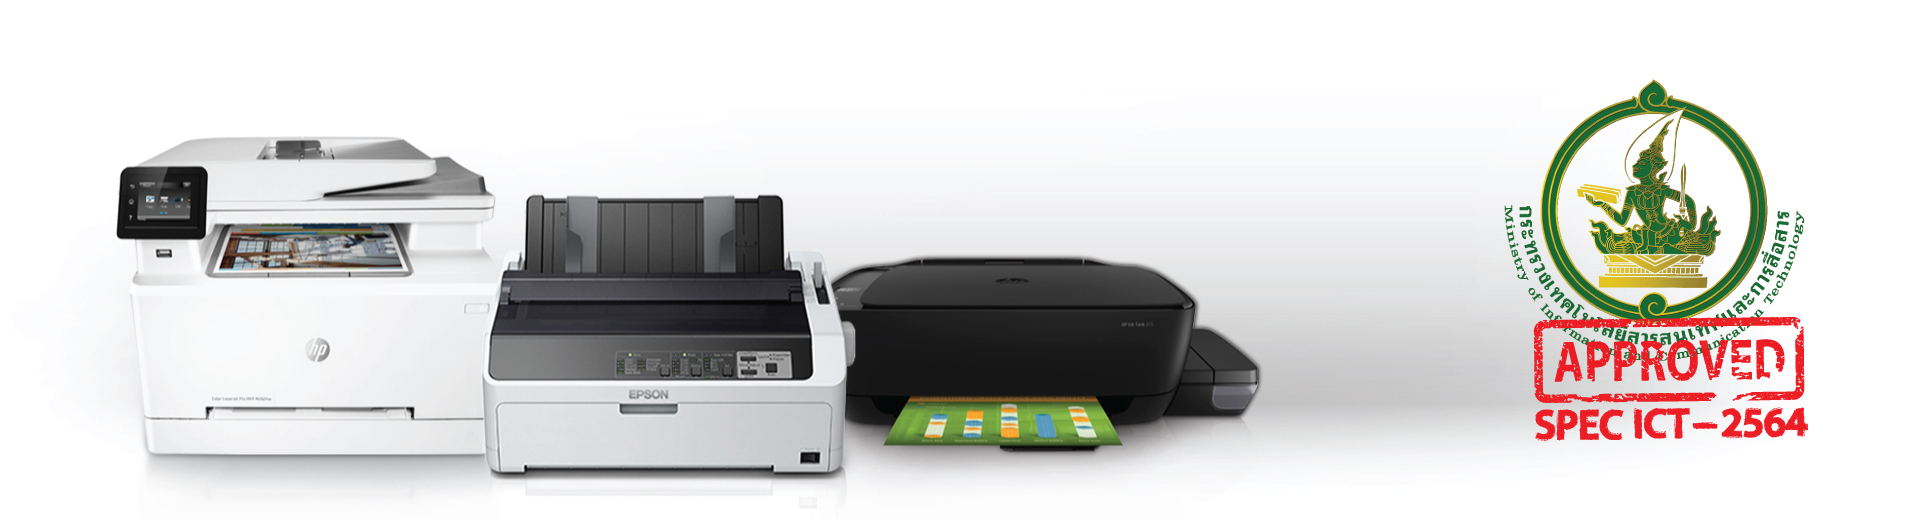 เครื่องพิมพ์ชนิด Dot Matrix Printer แบบแคร่ยาว ราคา 23,000 บาท